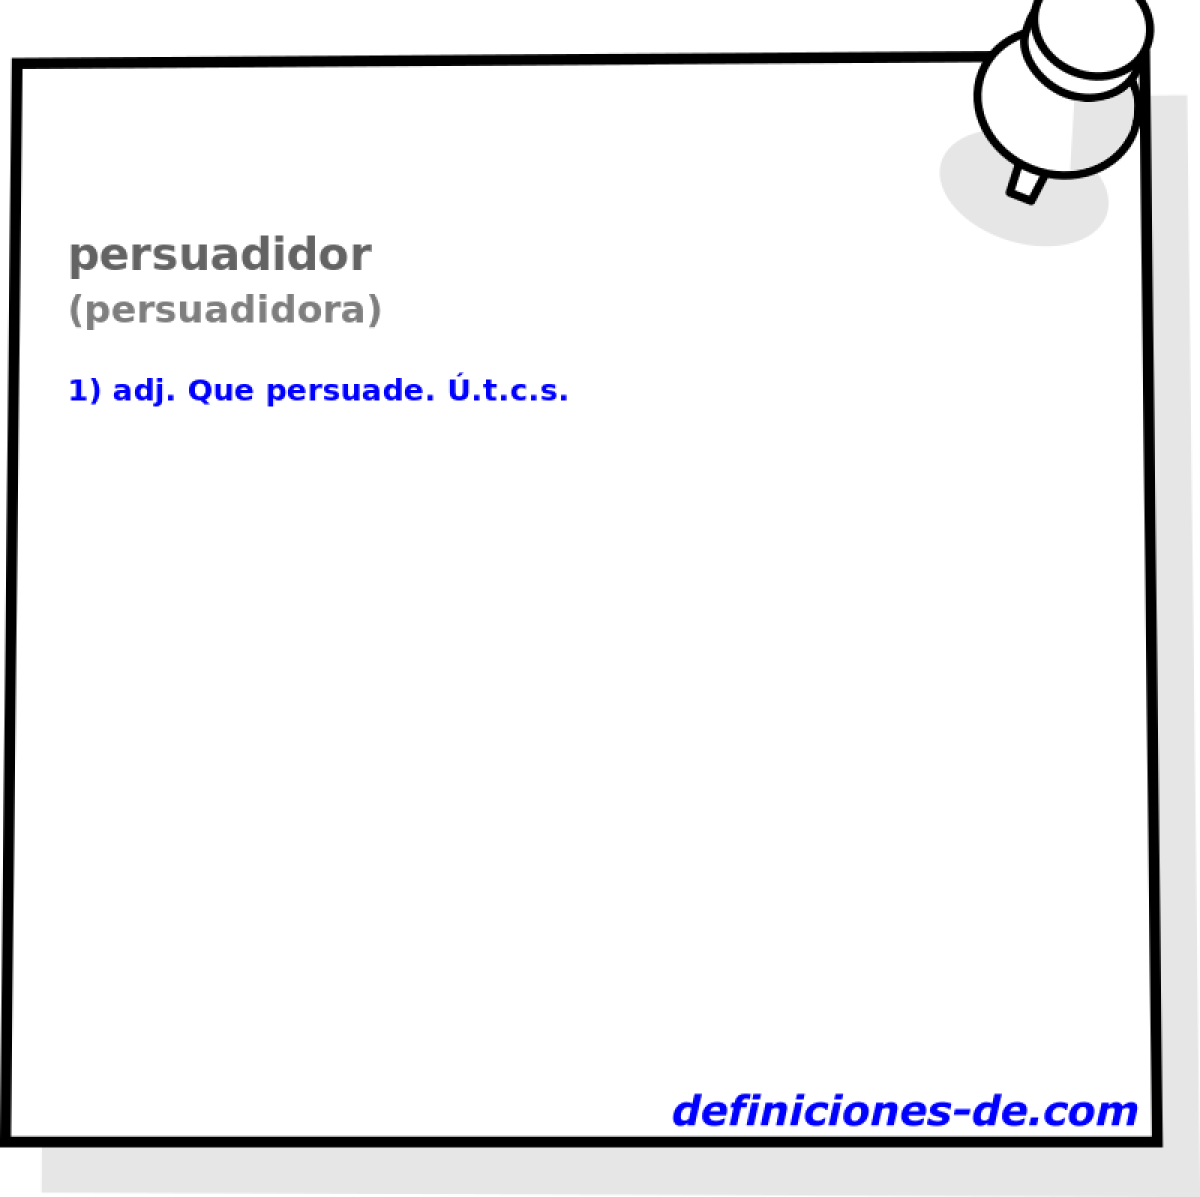 persuadidor (persuadidora)